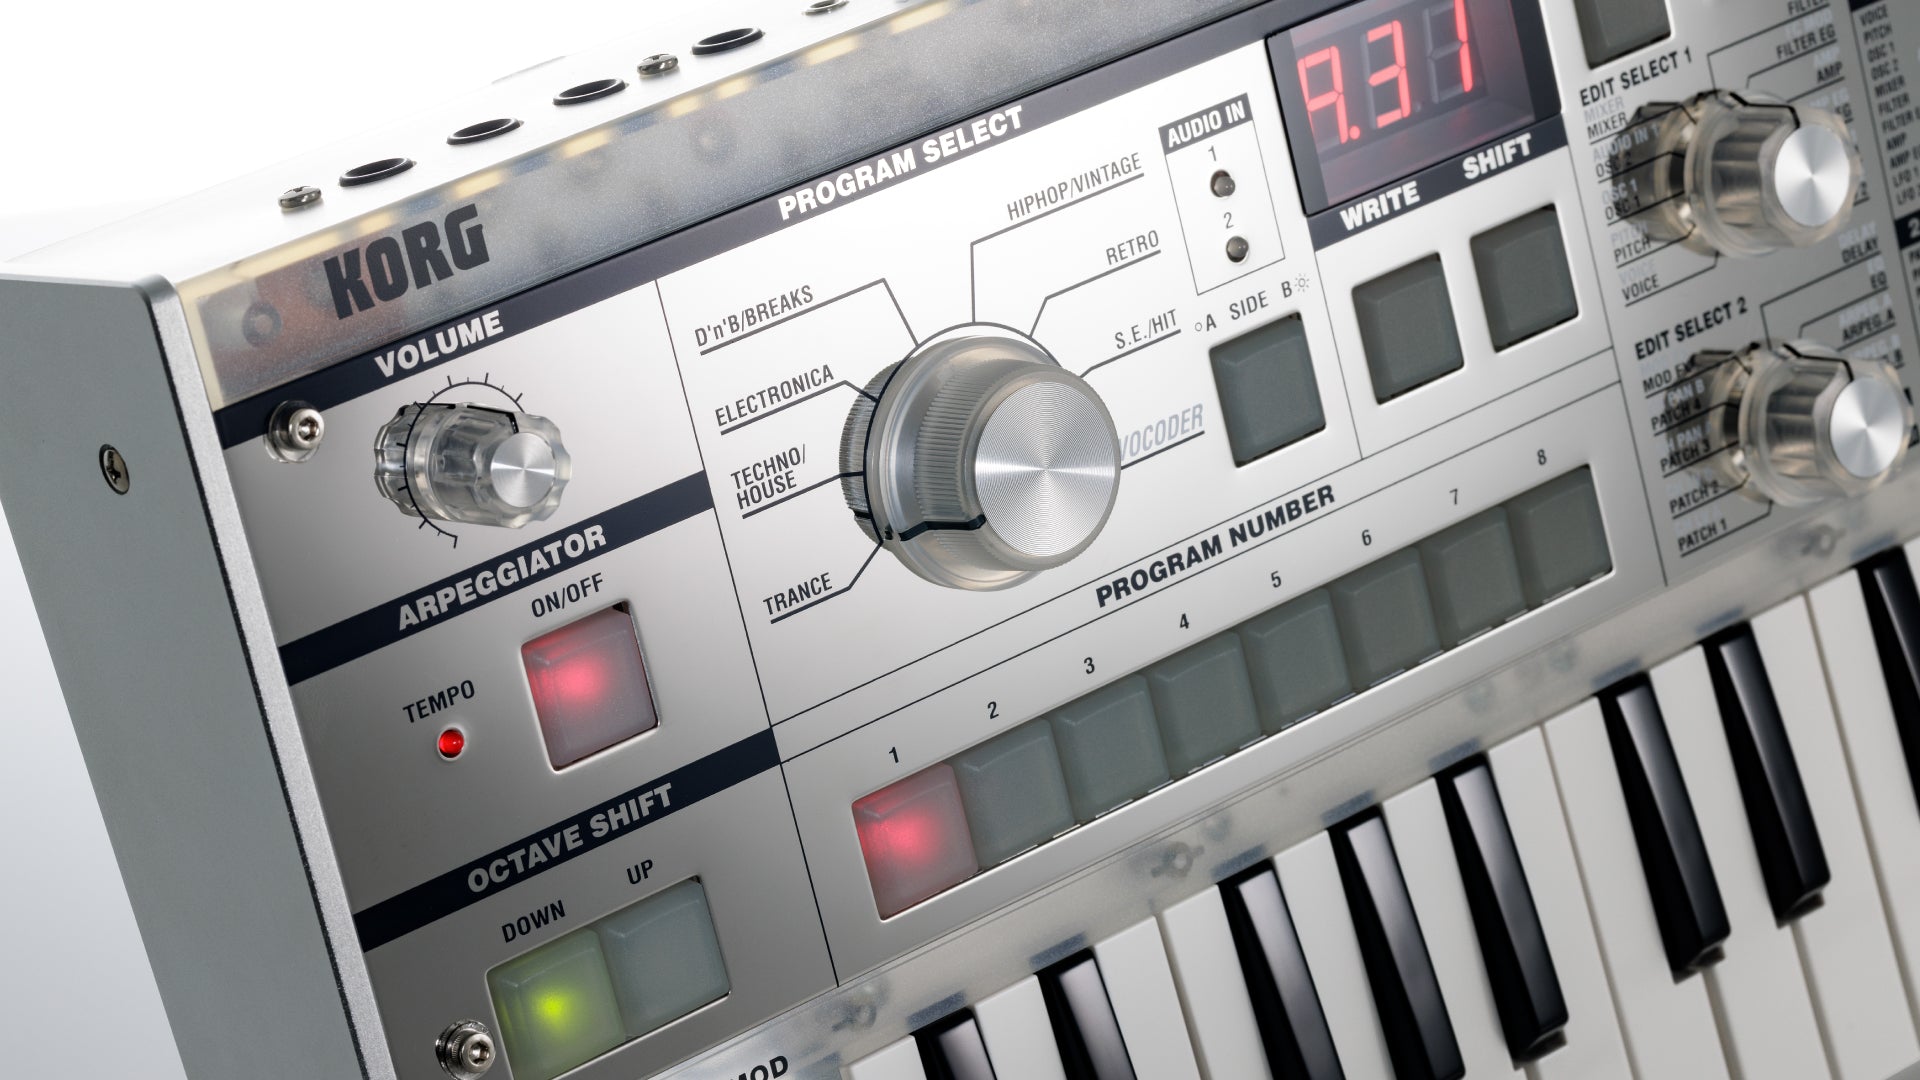 KORG microkorg synthesizer